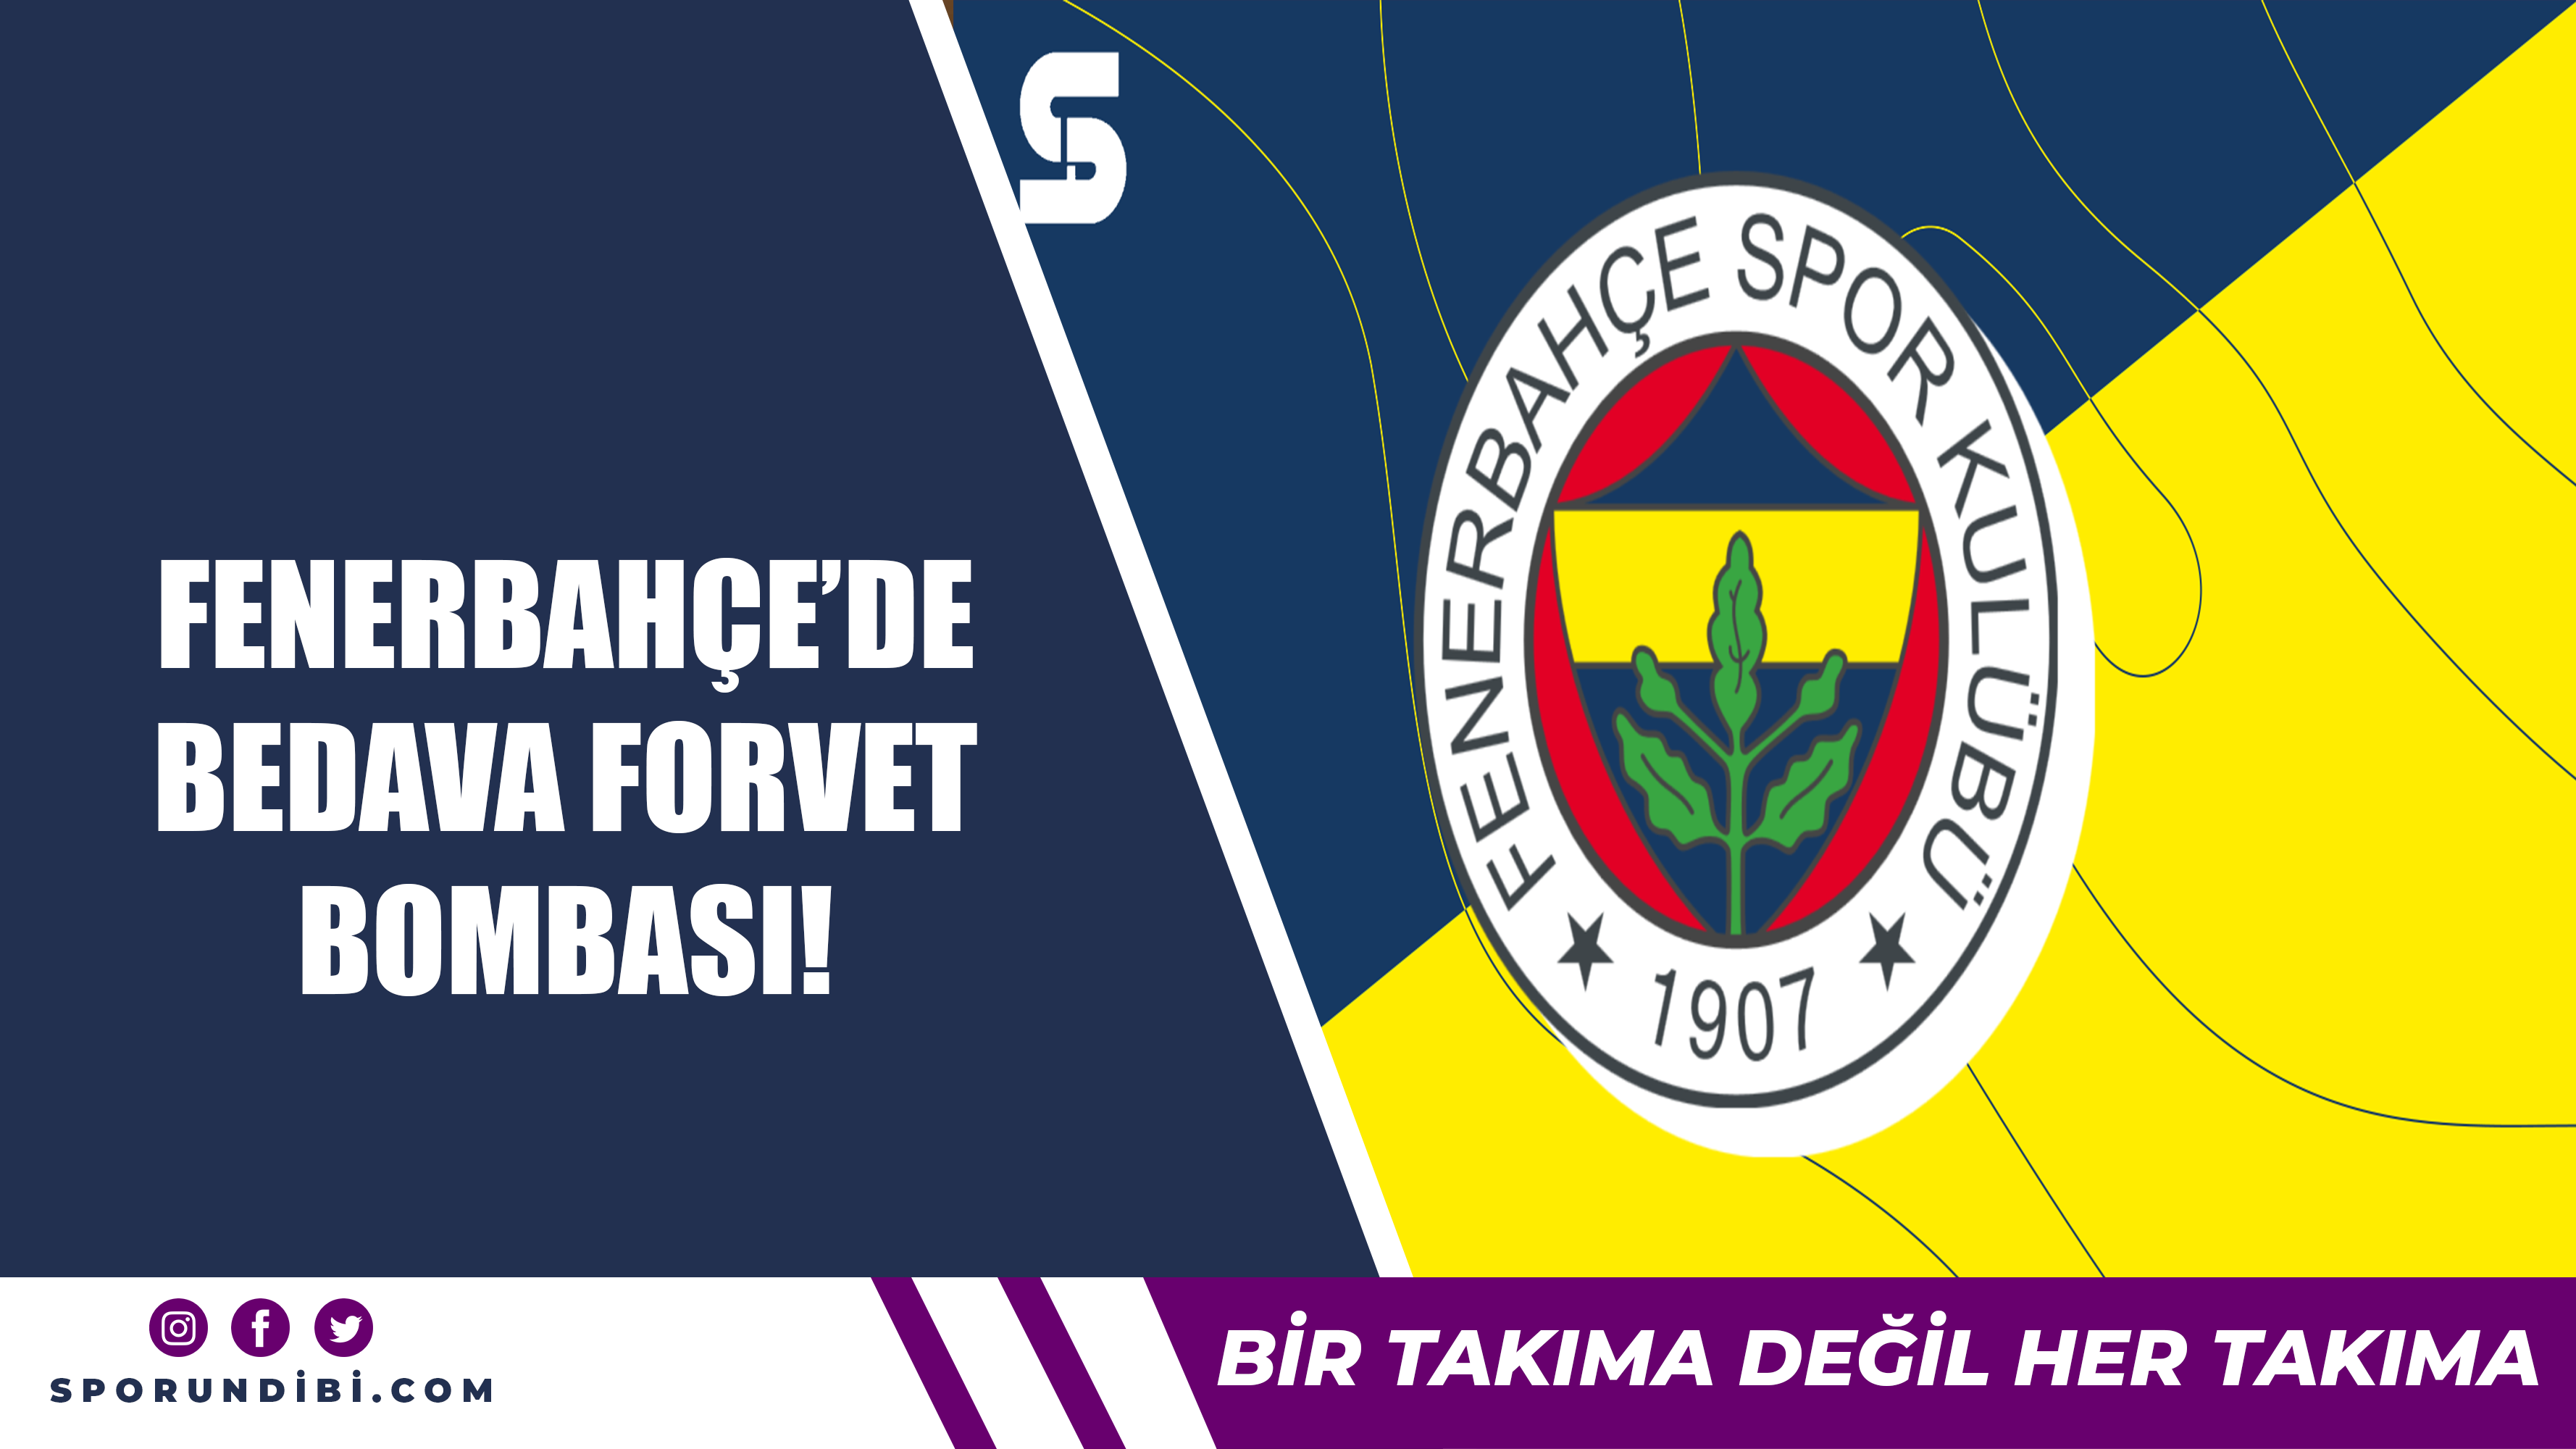 Fenerbahçe'de bedava forvet bombası!